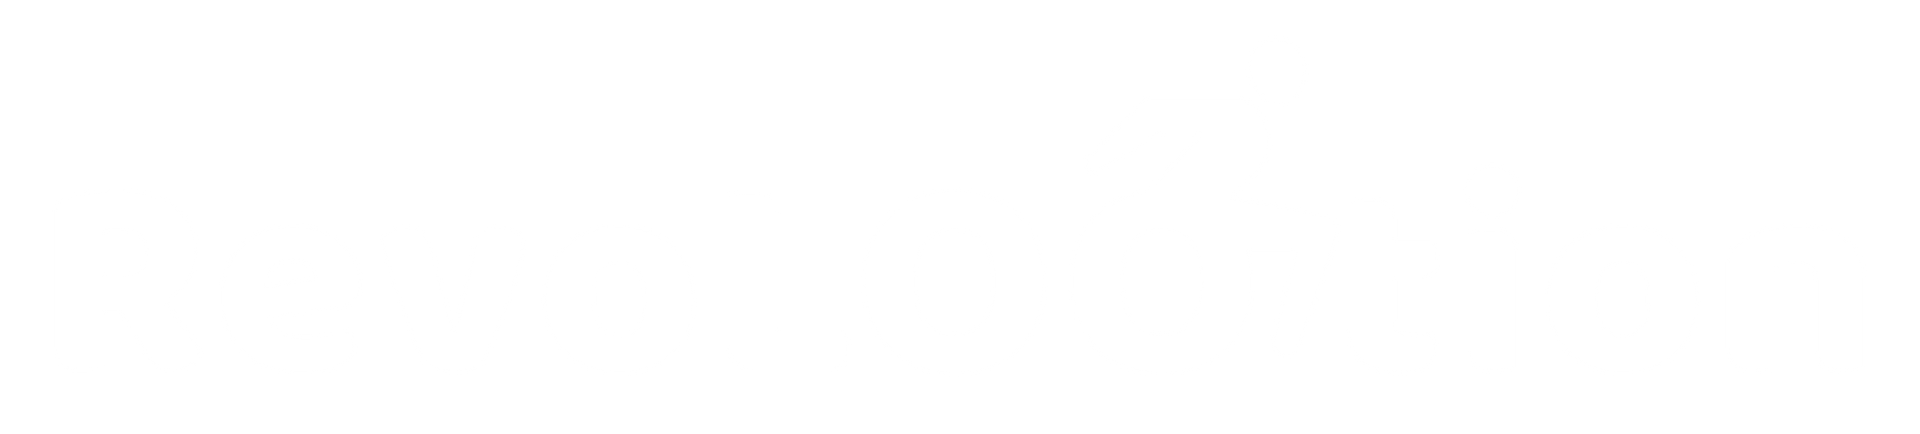 RevoLootion Logo White